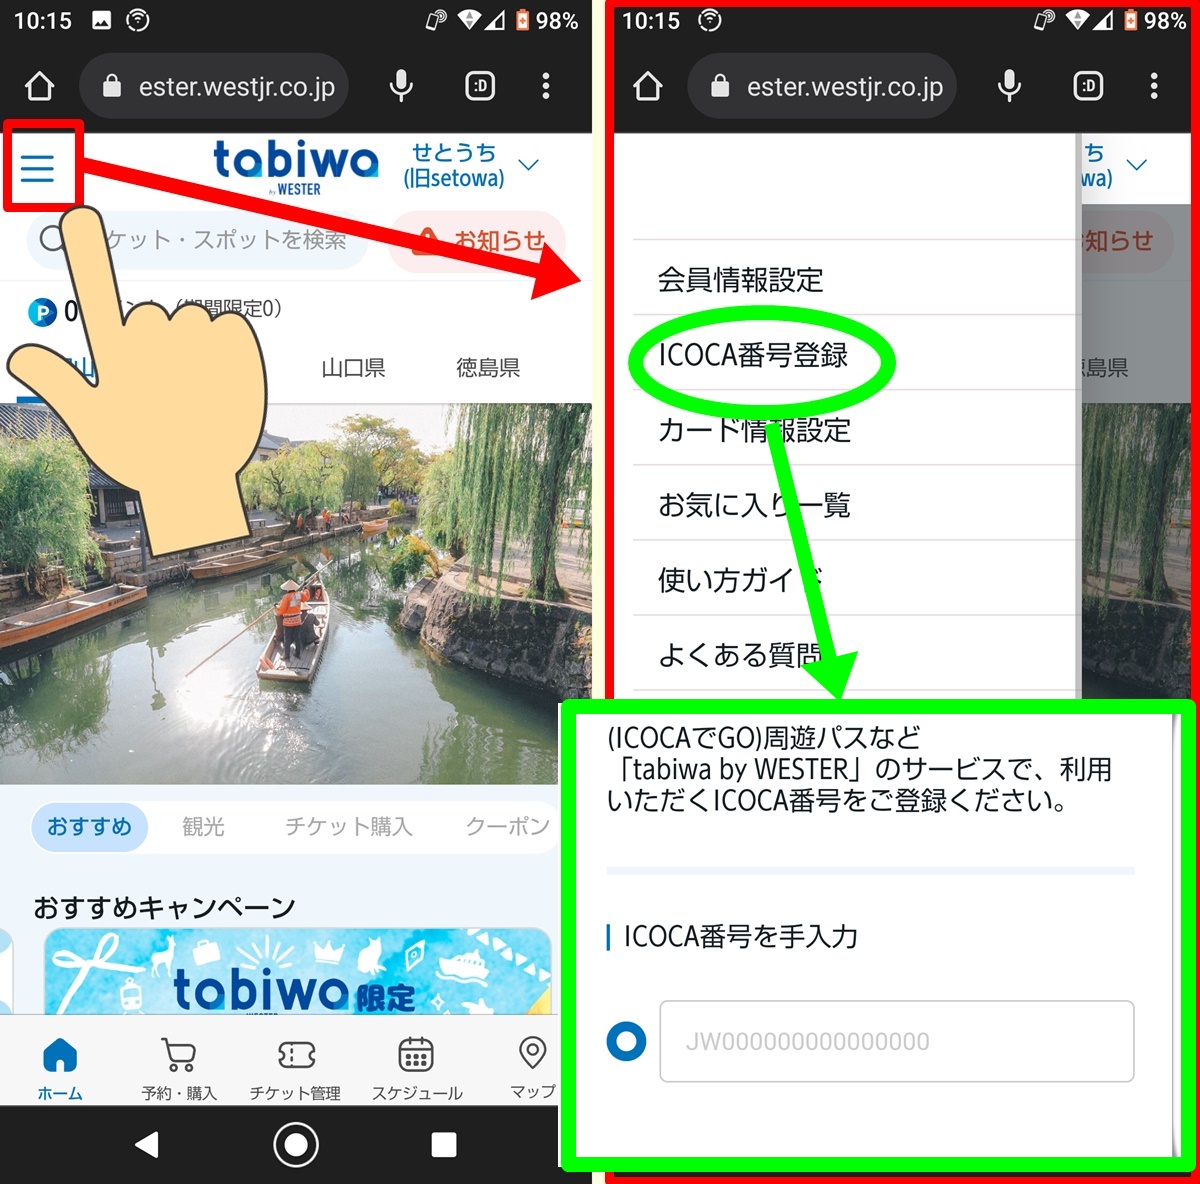 JR西日本の周遊乗り放題切符「神戸・姫路デジタルパス」の利用方法、使い方、乗り方